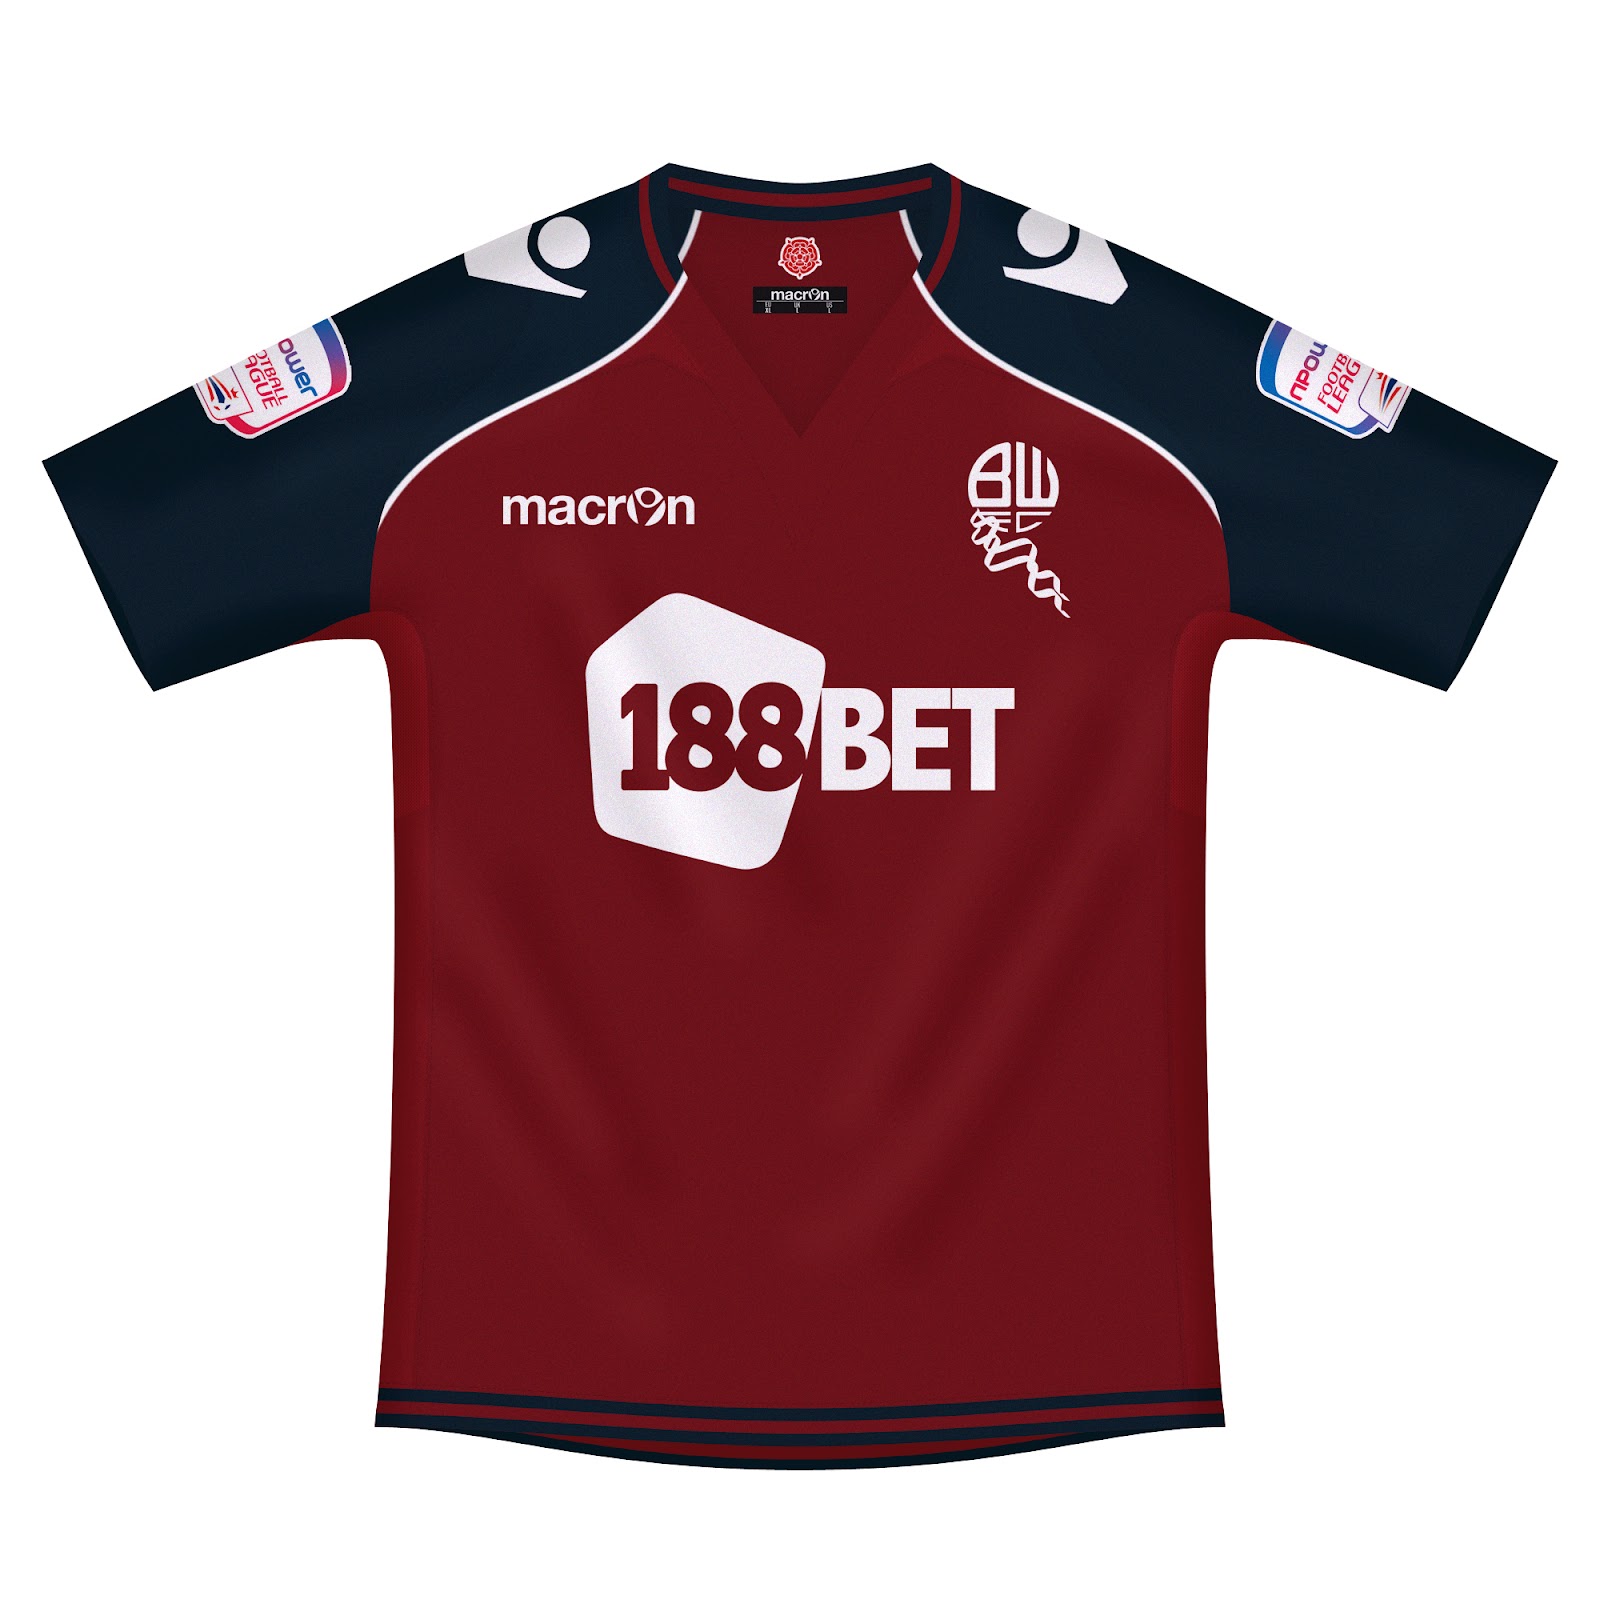 Download Kits Trikot Camisas Maillot: Bolton Wanderers